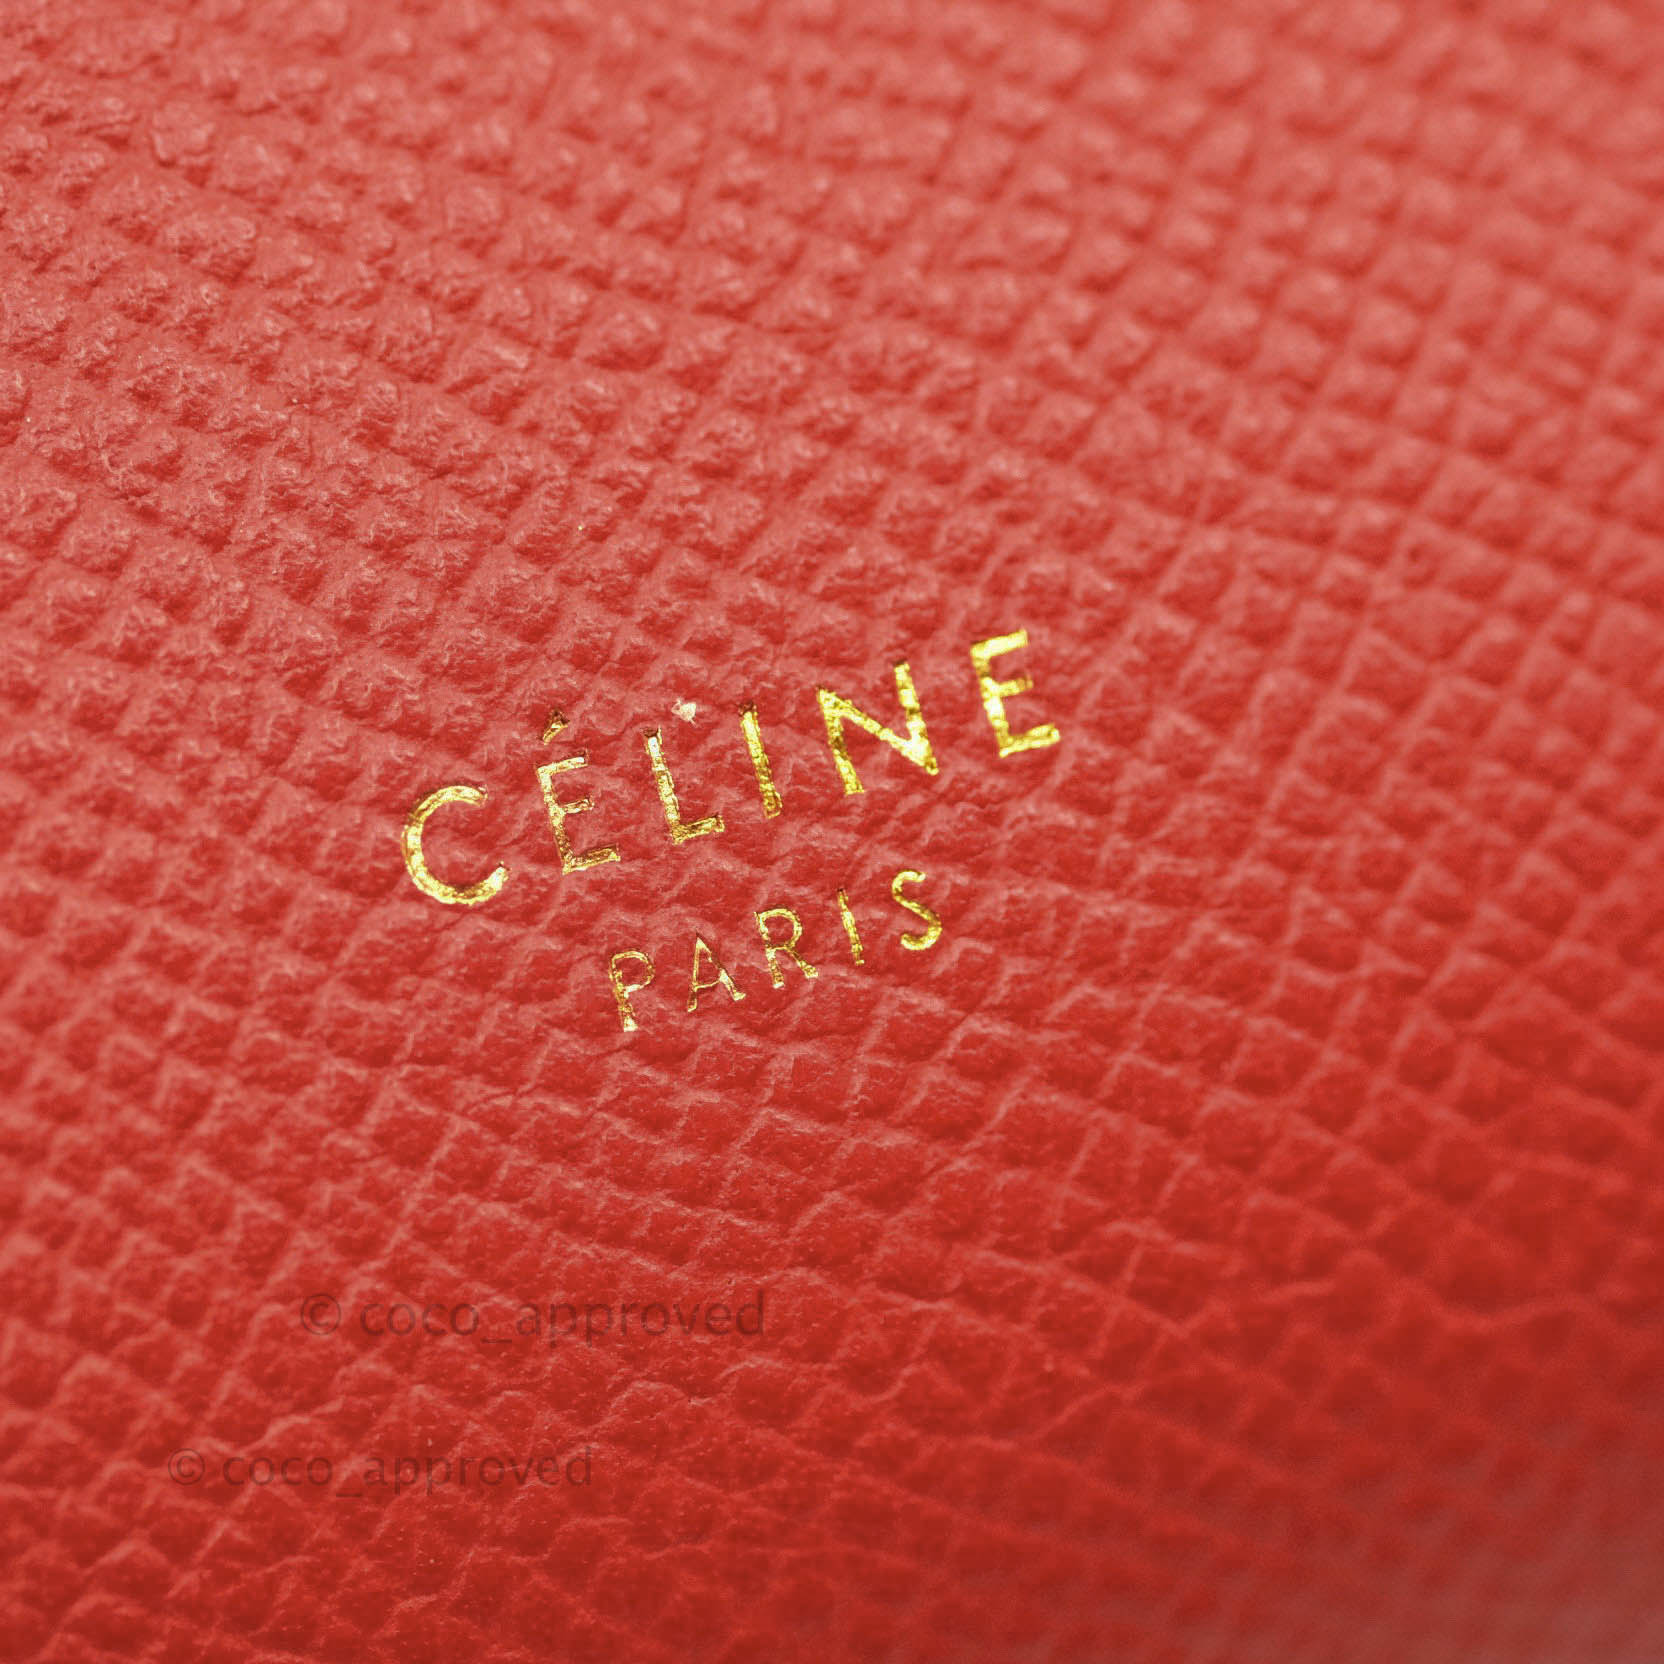 Celine Nano Belt Bag Grey Grained Calfskin Gold Hardware – Coco Approved  Studio